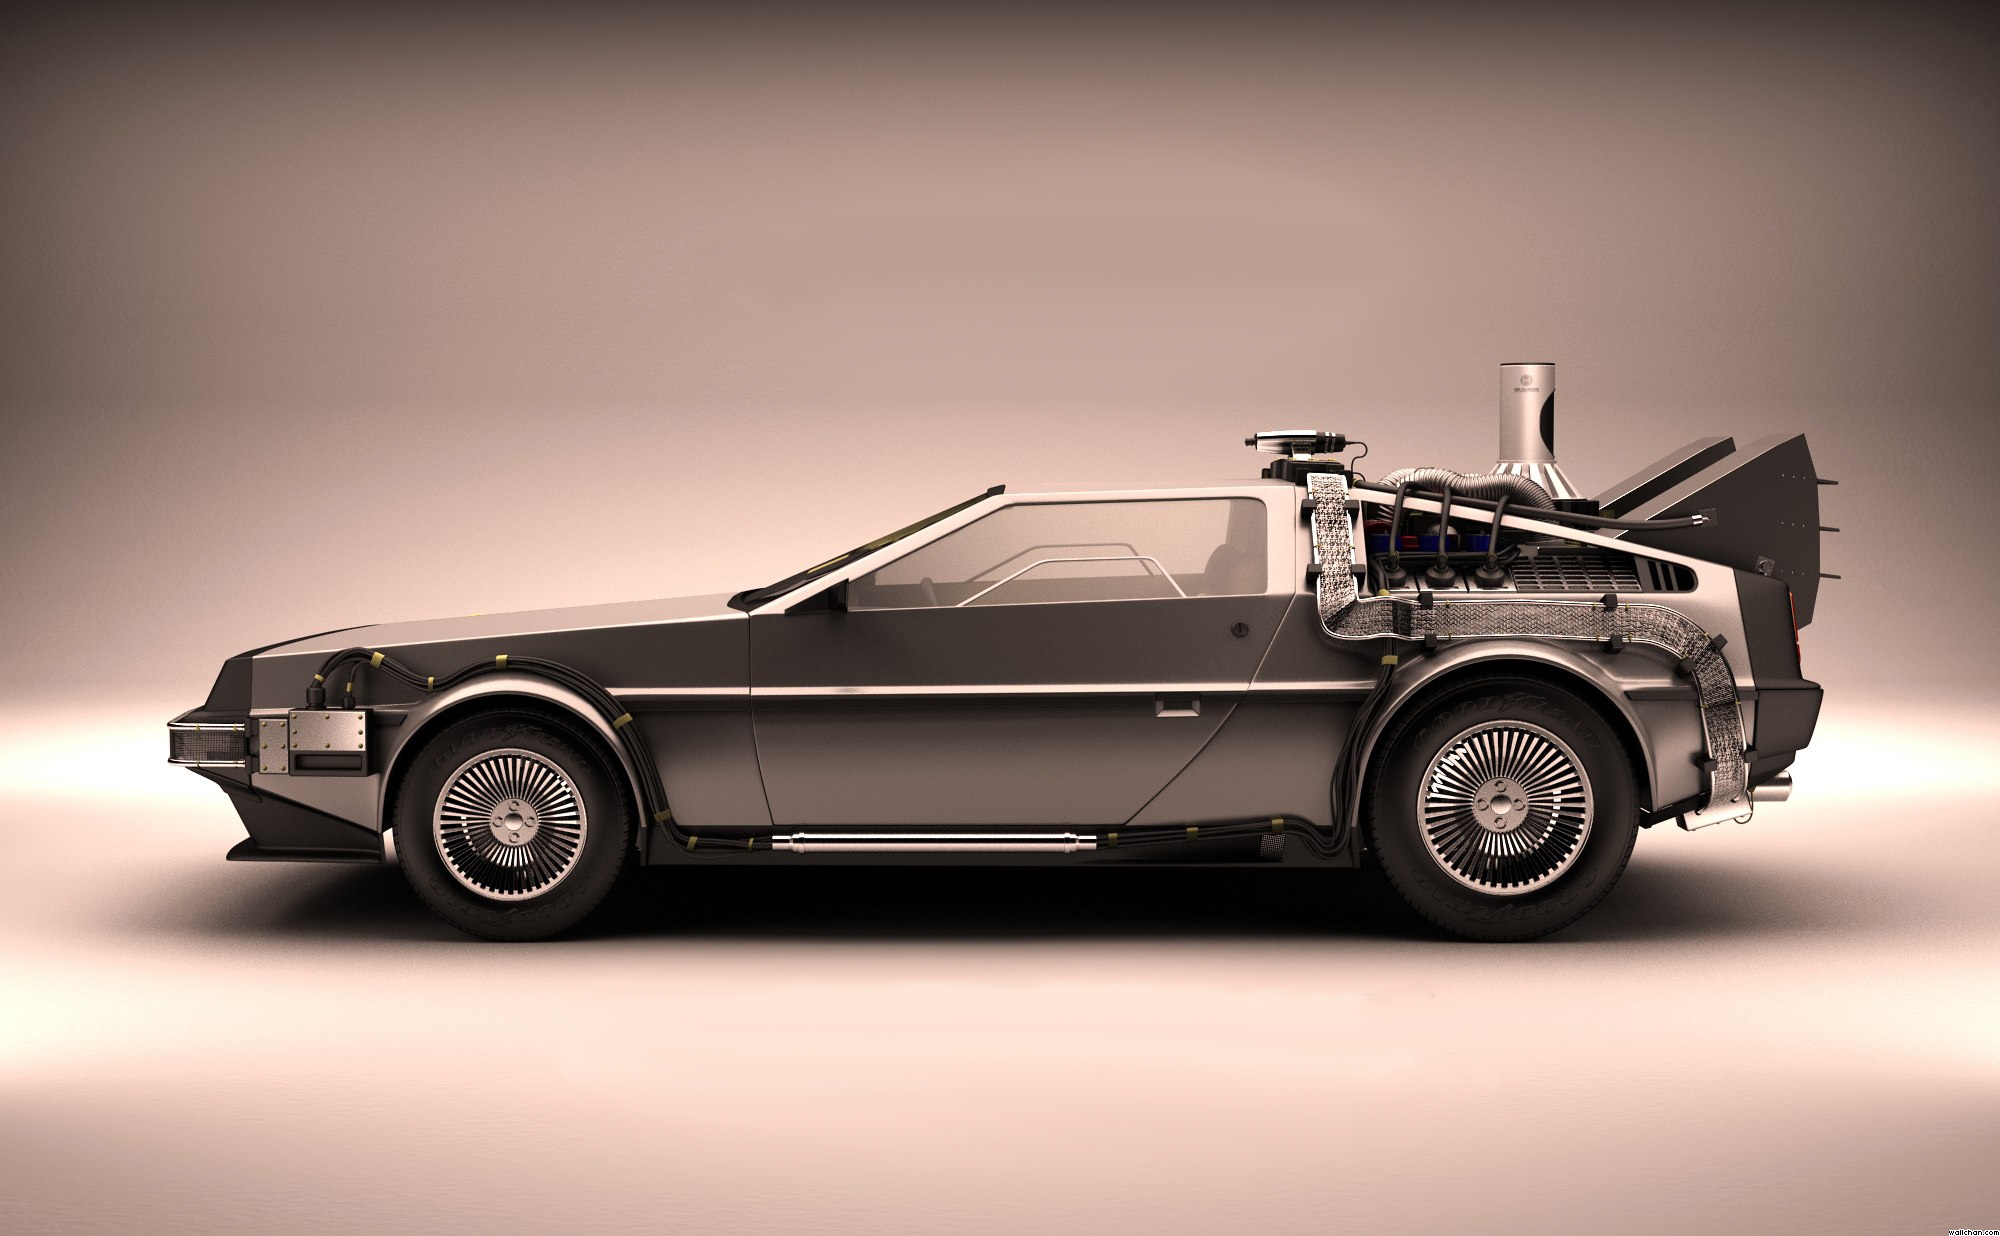 DMC DeLorean, Back to the Future, The Time Machine, Car Wallpaper